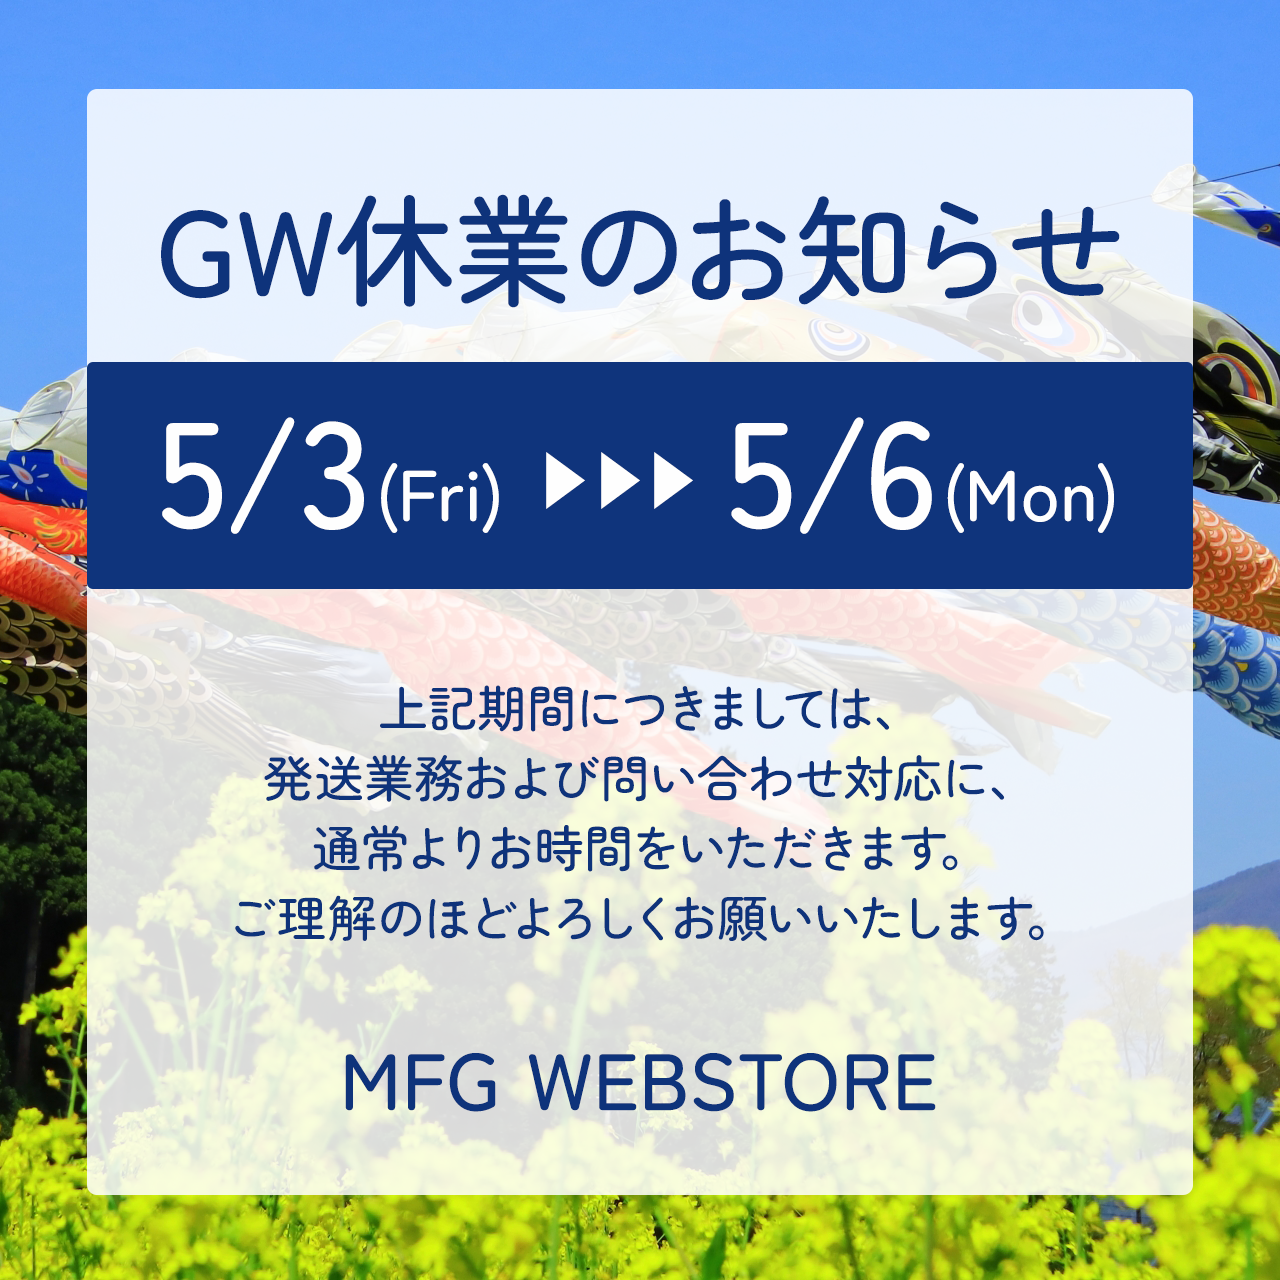 【5月3日(金) – 5月6日(月)】GW休業のお知らせ